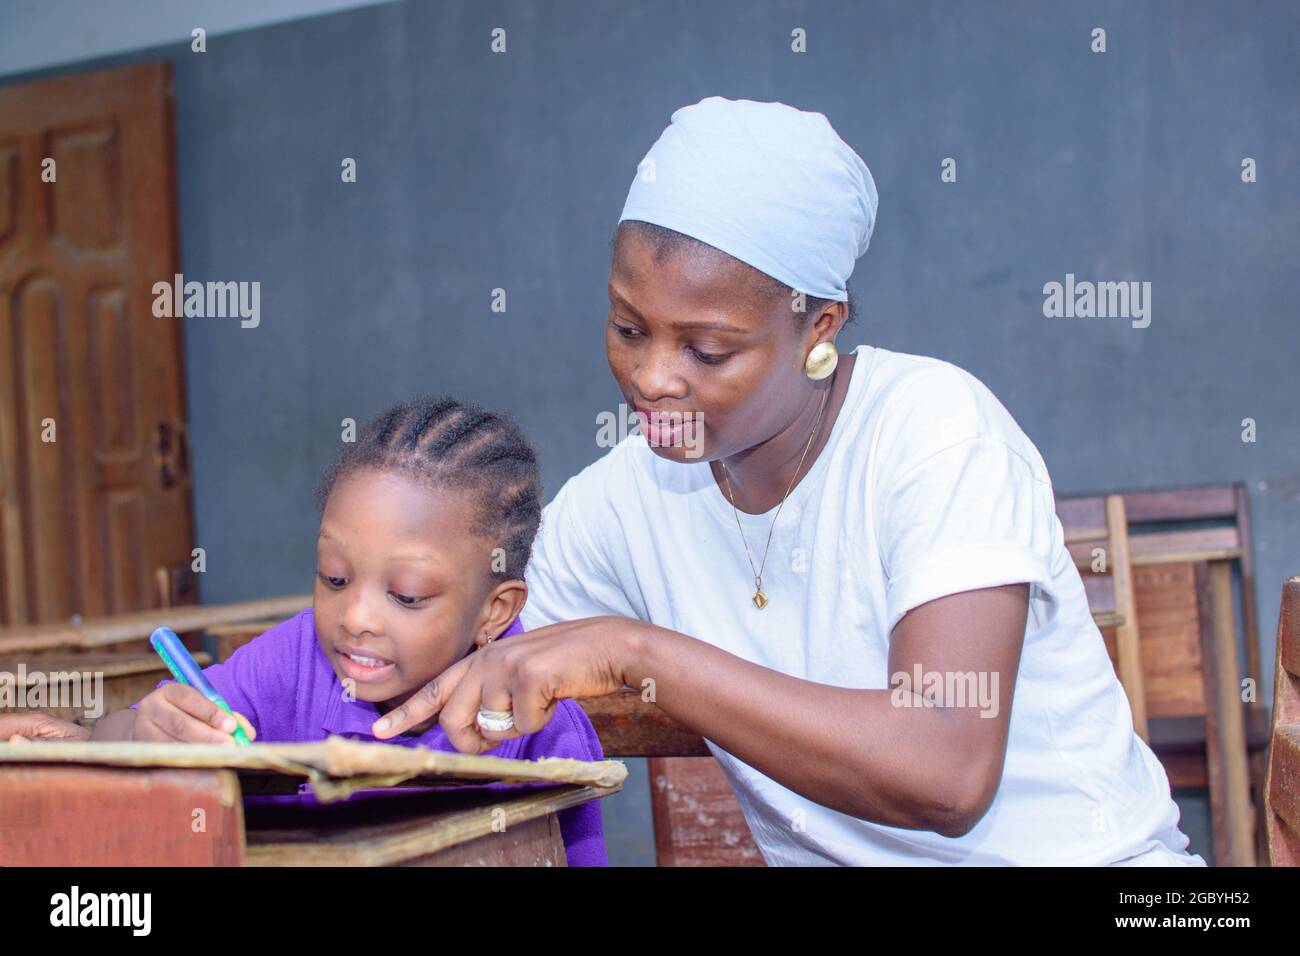 Afrikanische nigrische Mutter oder Lehrerin, die mit ihrem Kind in einem Klassenzimmer sitzt und ihr beim Studium hilft, in ihrer Schule hervorragende Leistungen zu erzielen Stockfoto